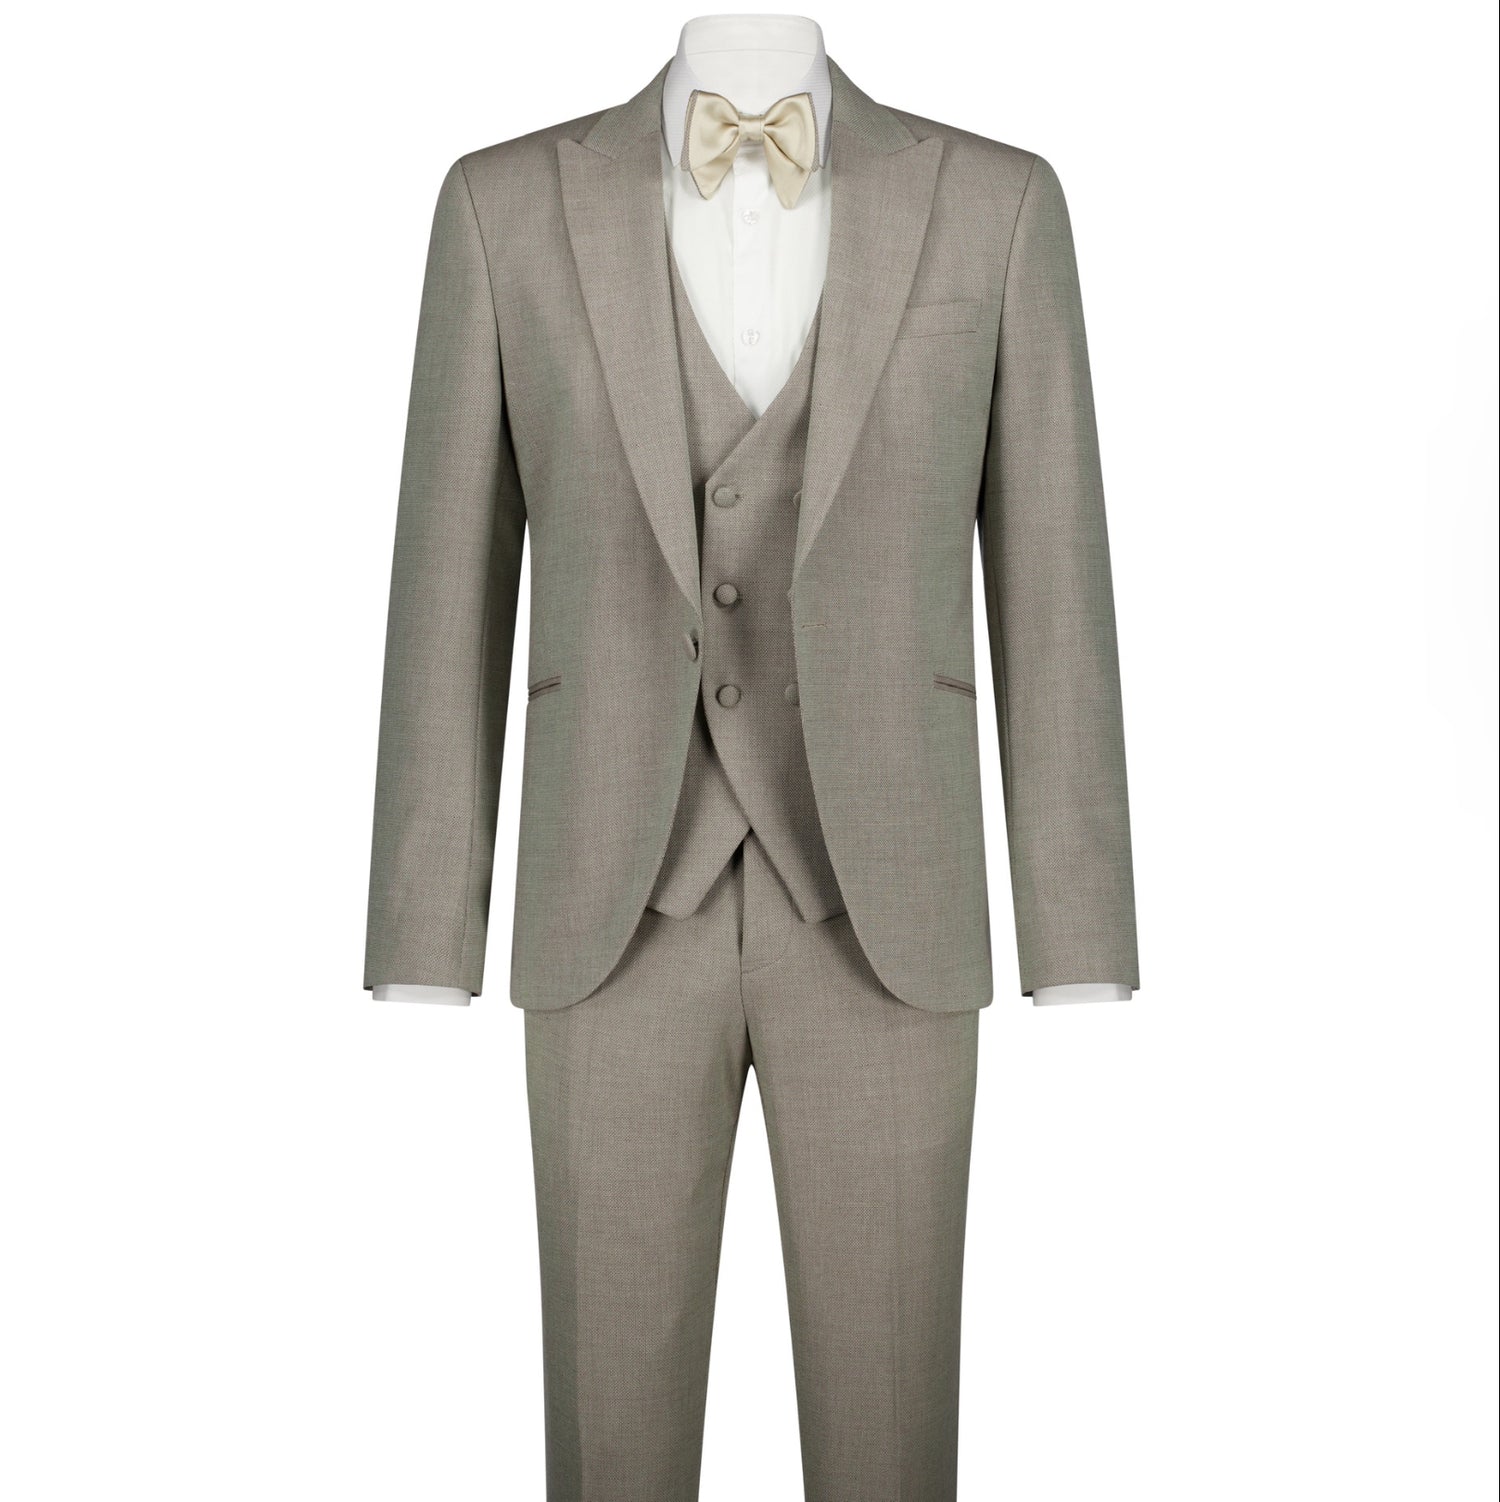 The Veratti Suit